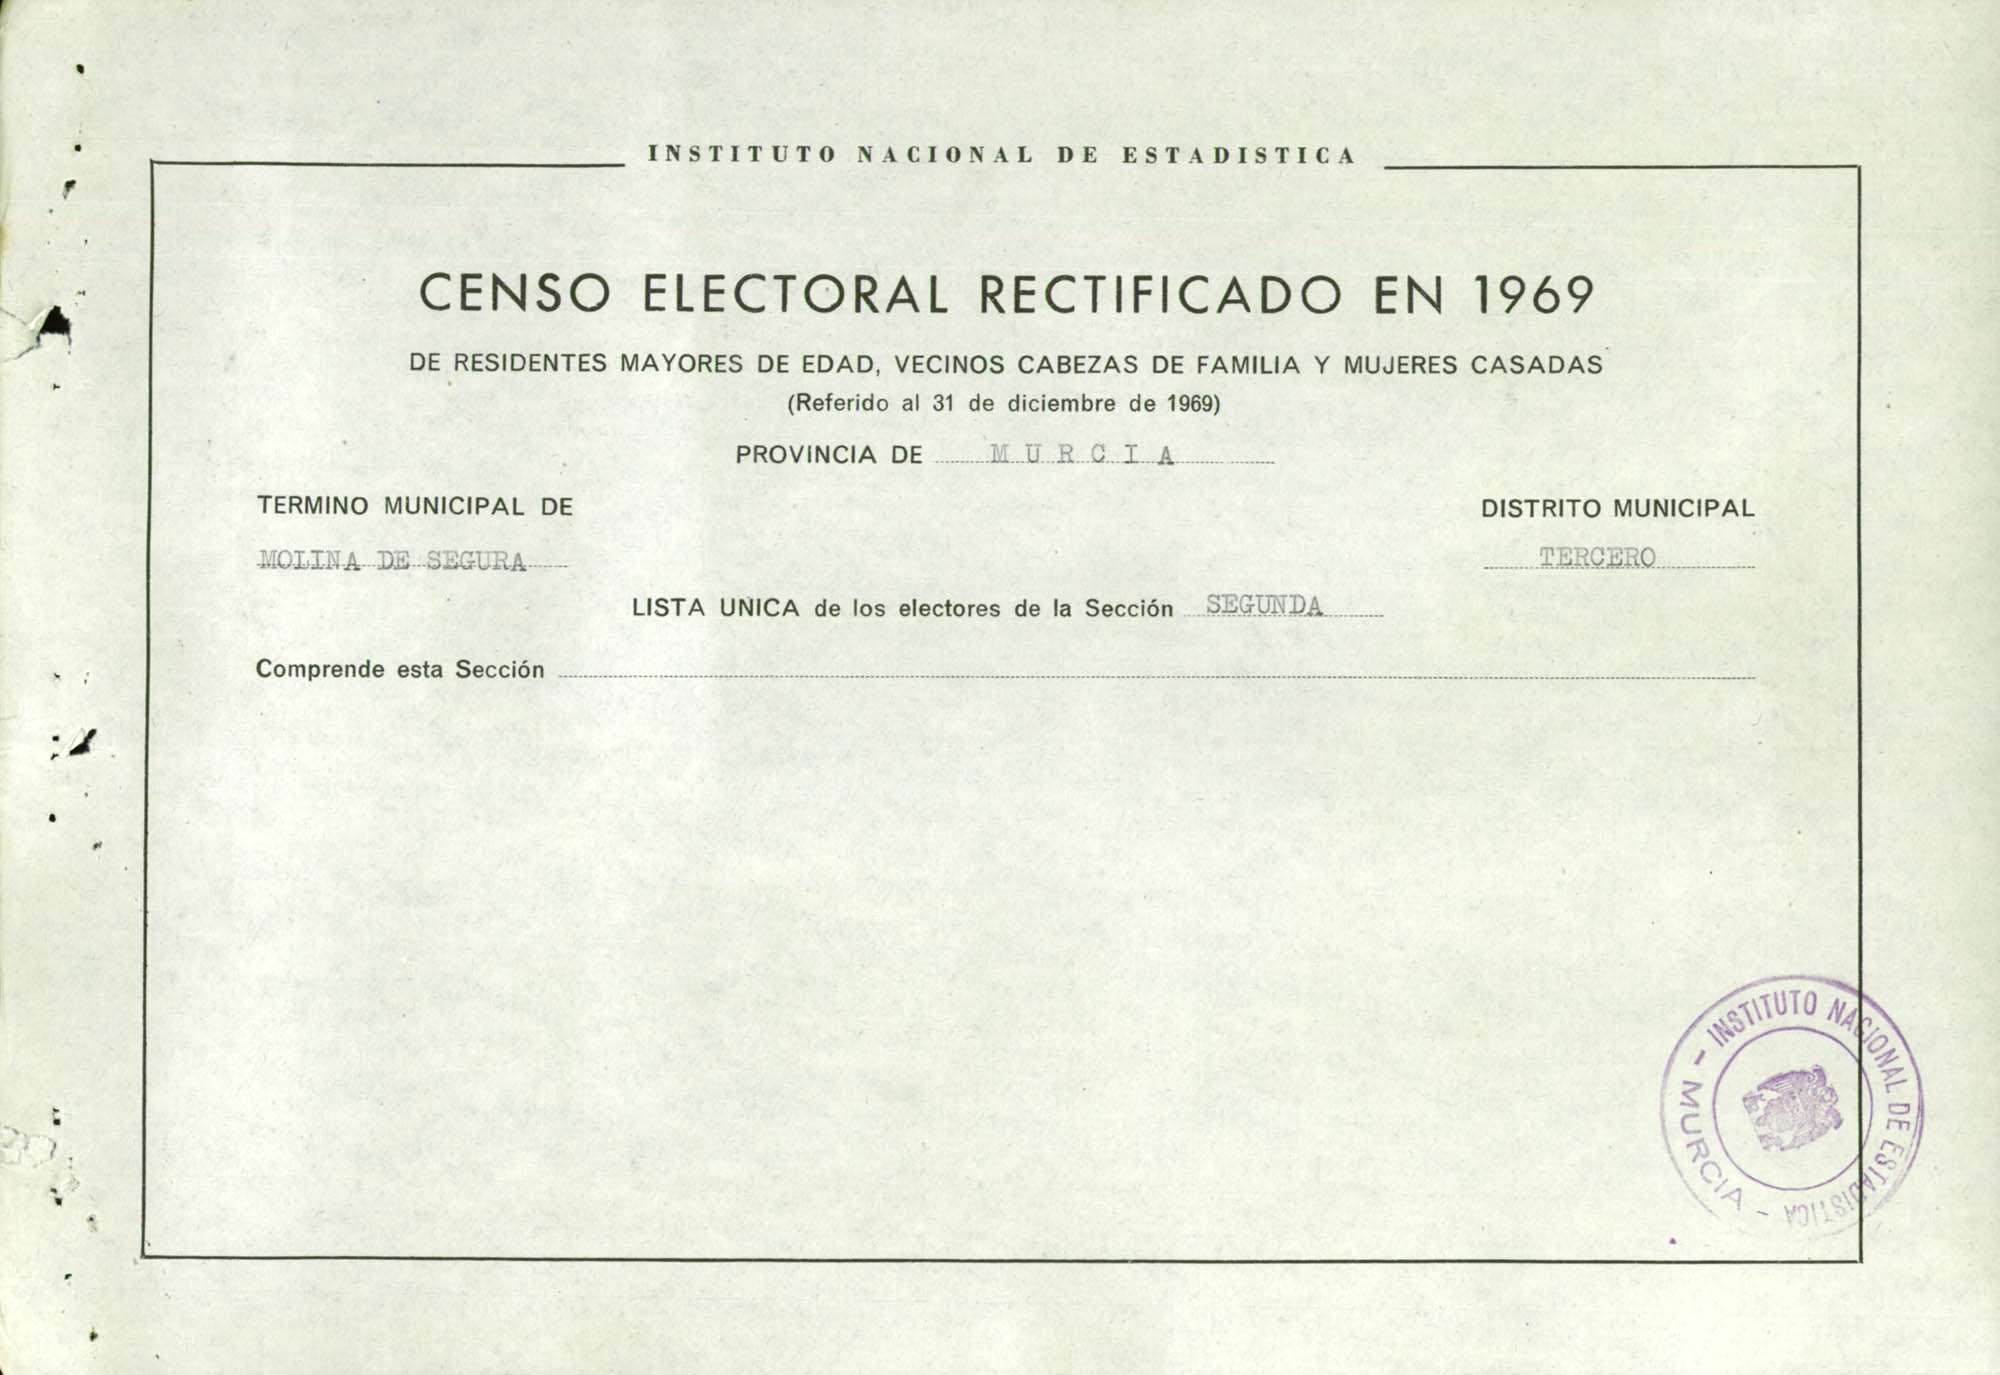 Censo electoral rectificado en 1969: listas definitivas de Molina de Segura, Distrito 3º, sección 2ª.